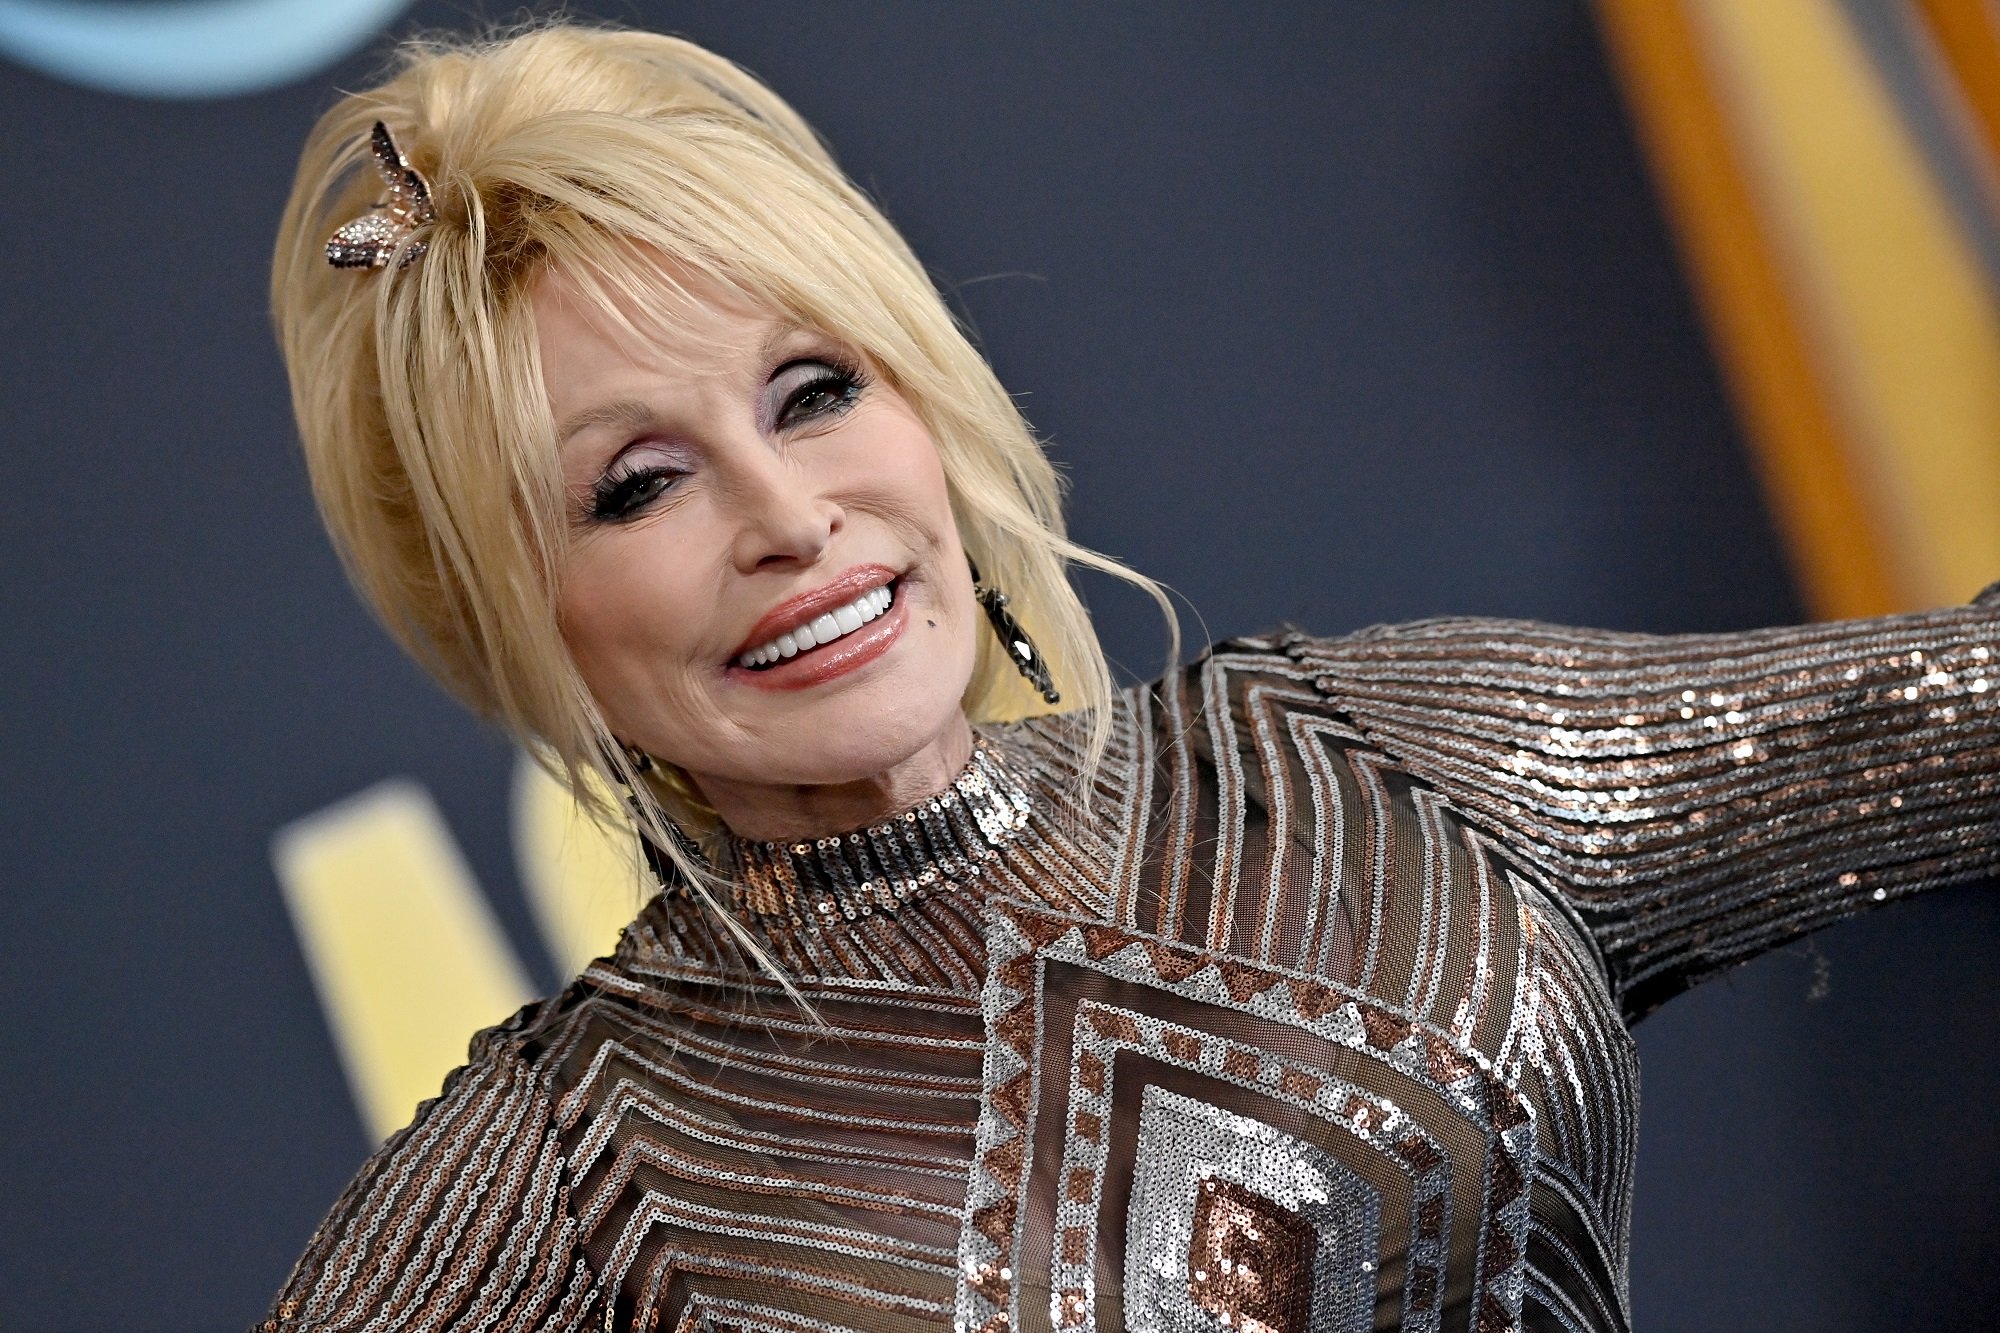 Dolly Parton smiles while wearing a metallic dress